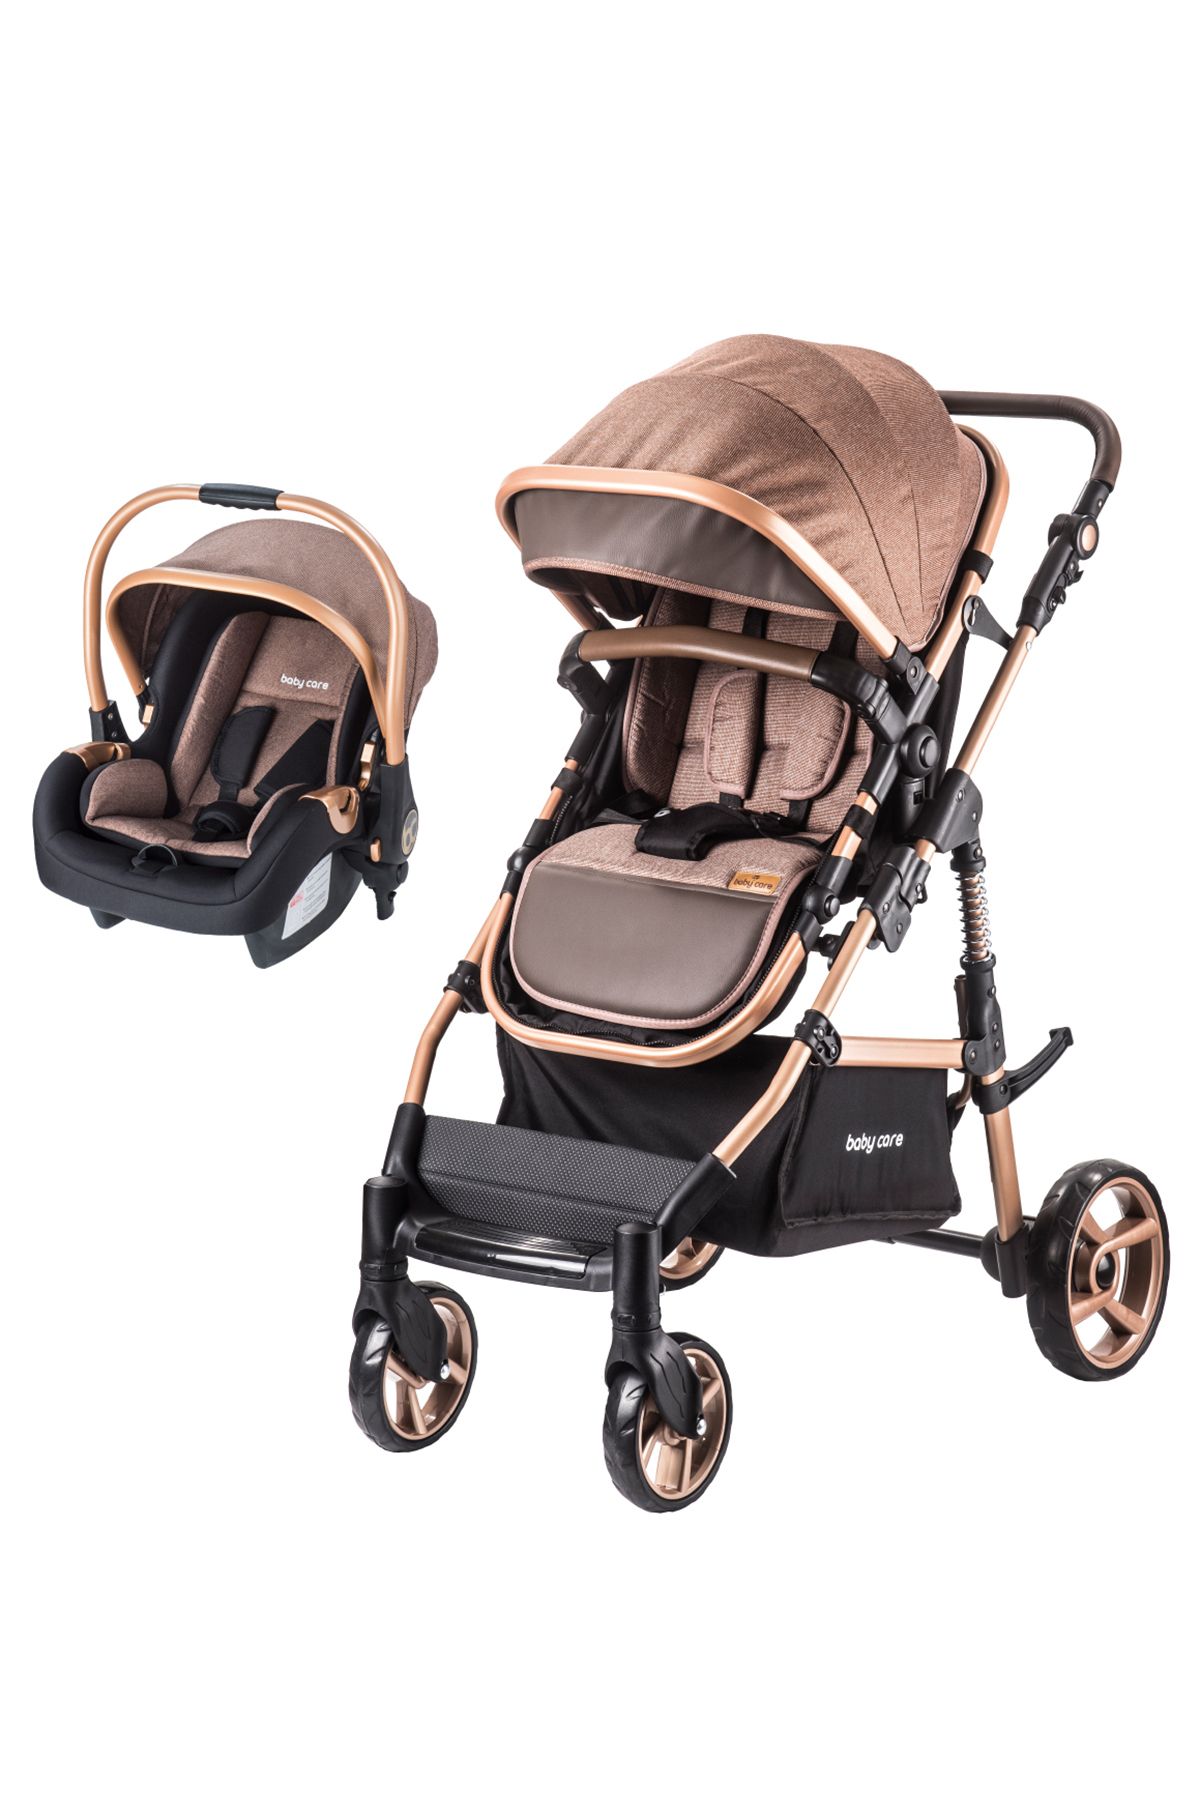 Baby Care Babycare Bora Cross Travel Sistem Bebek Arabası Gold Kahverengi